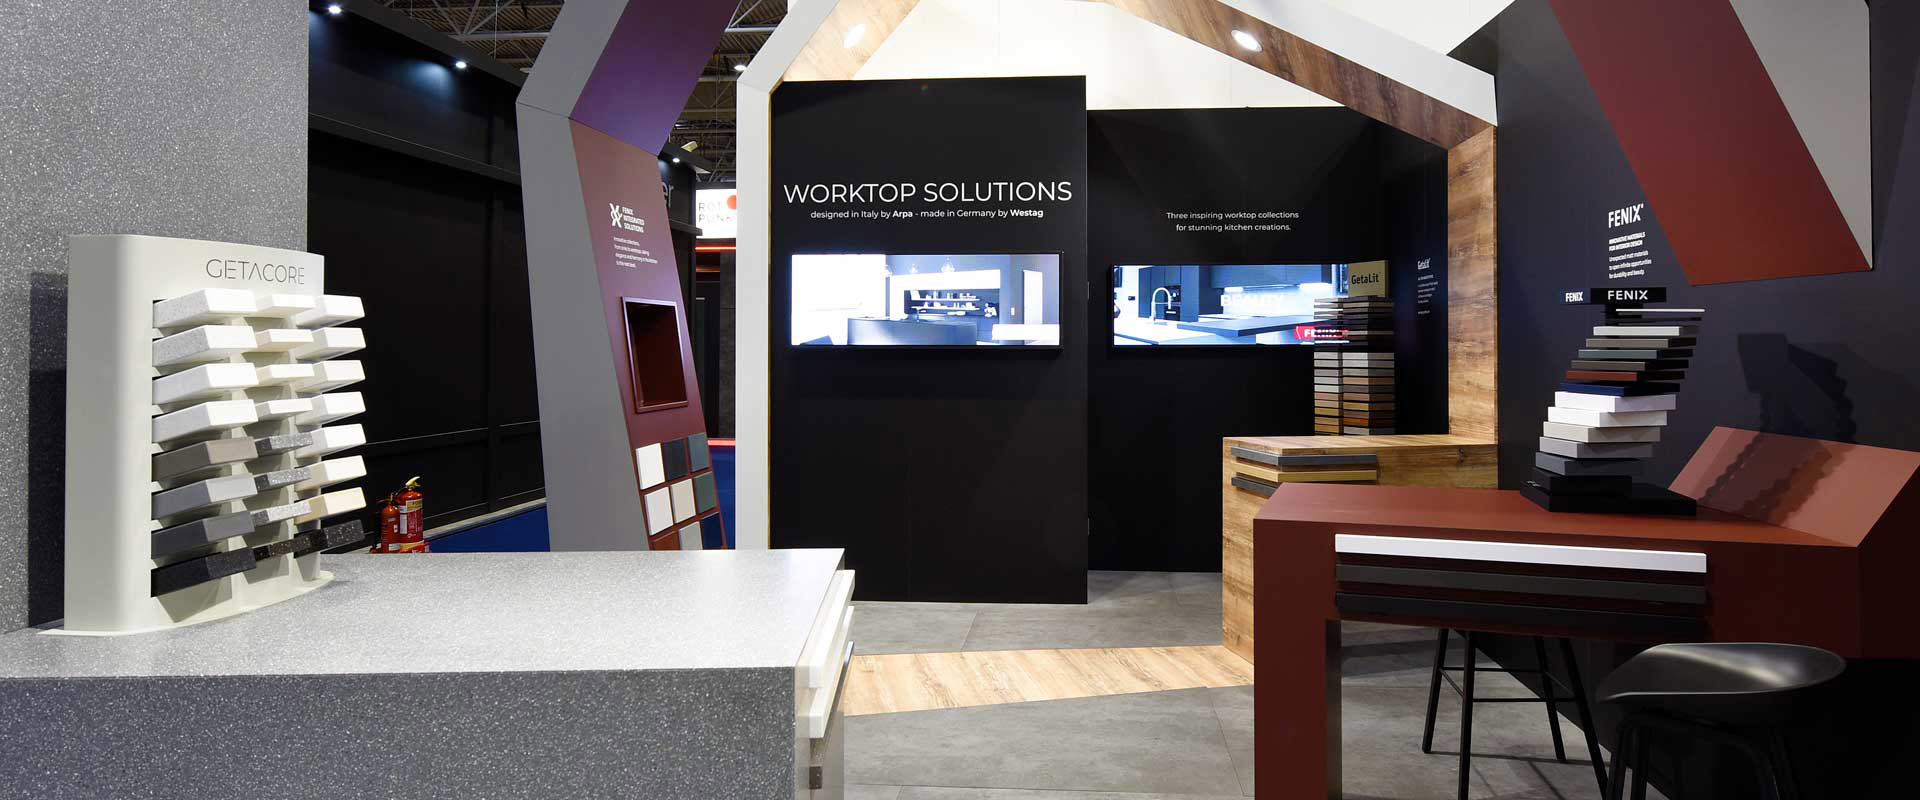 Worktop Solutions stand design